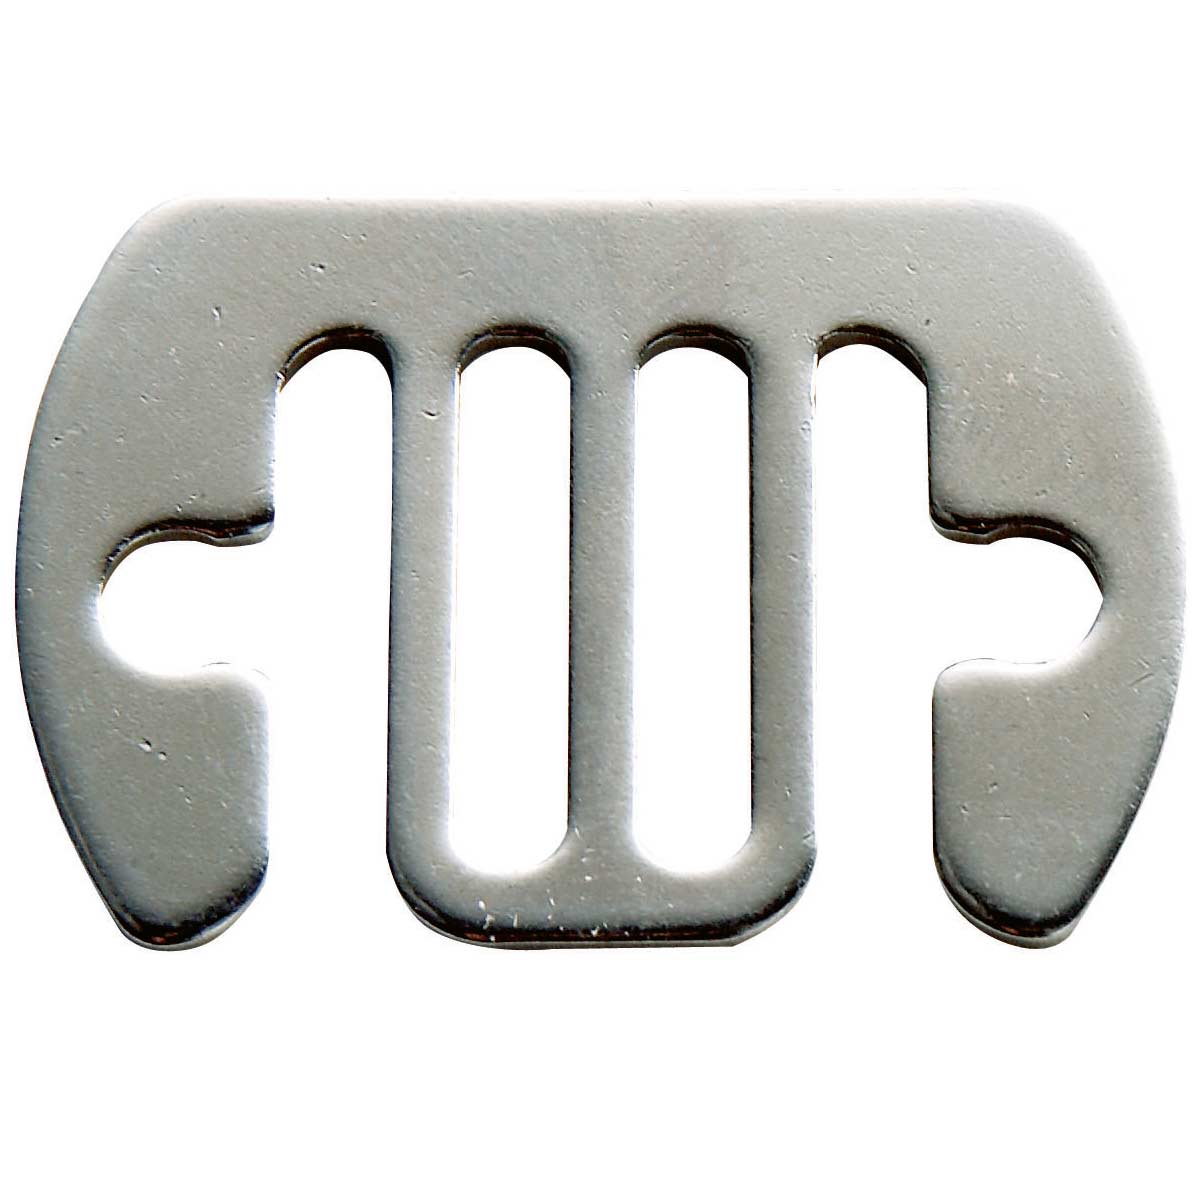 5x Plaque connecteur ruban de 10-20mm